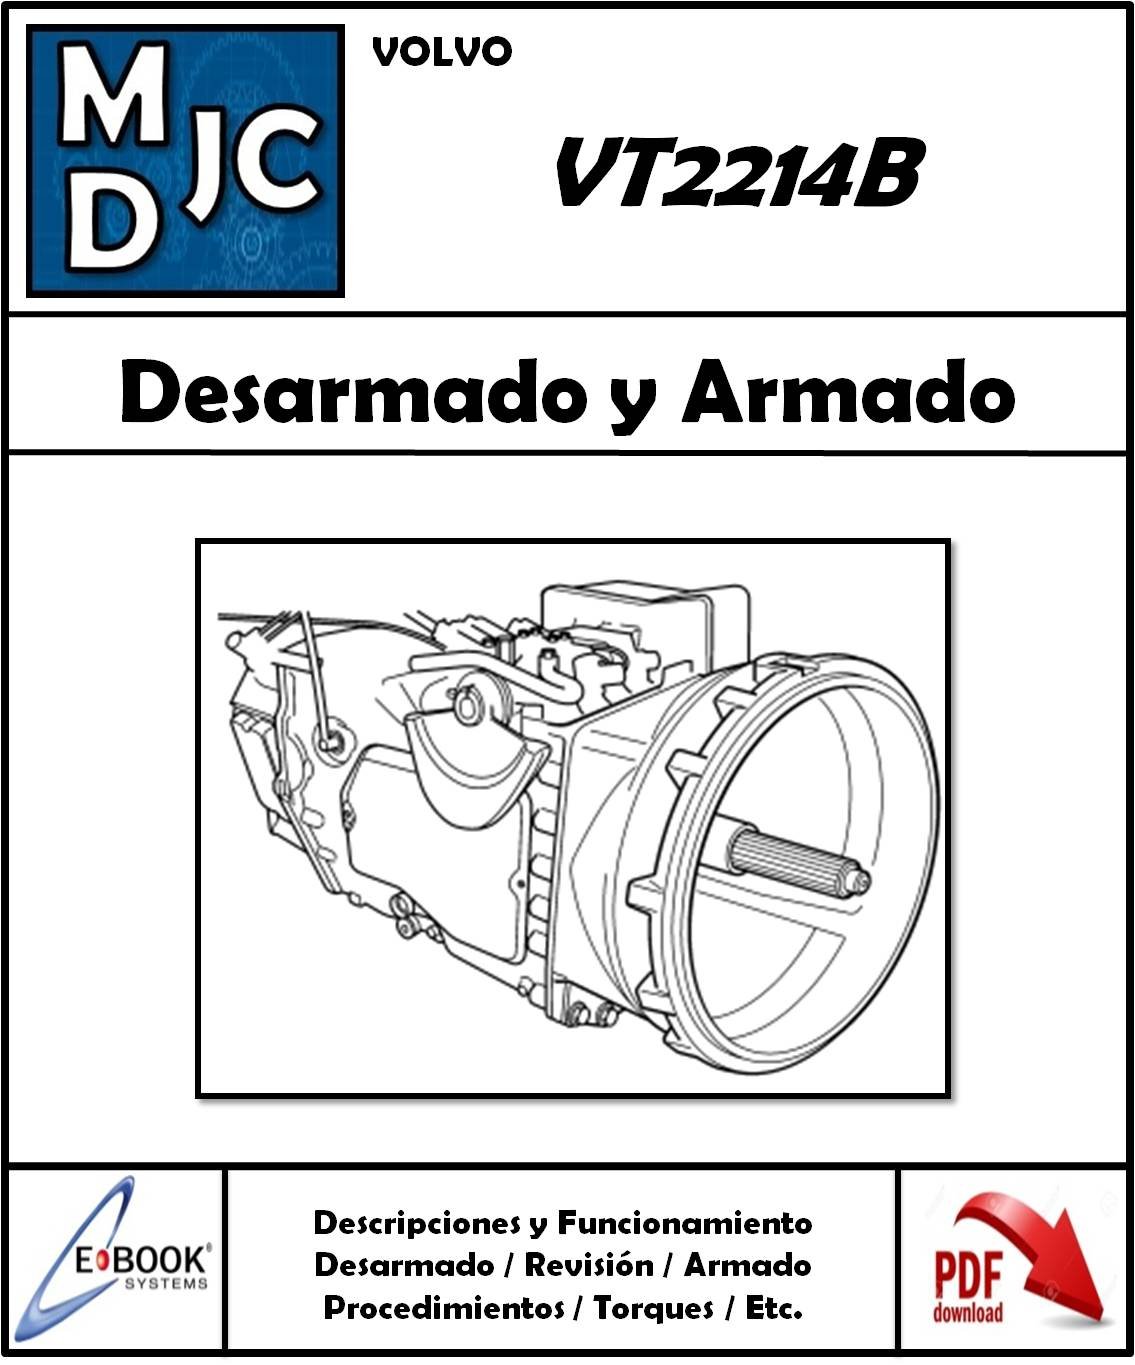 Manual de Taller (Desarmado y Armado) Caja Volvo VT2214B